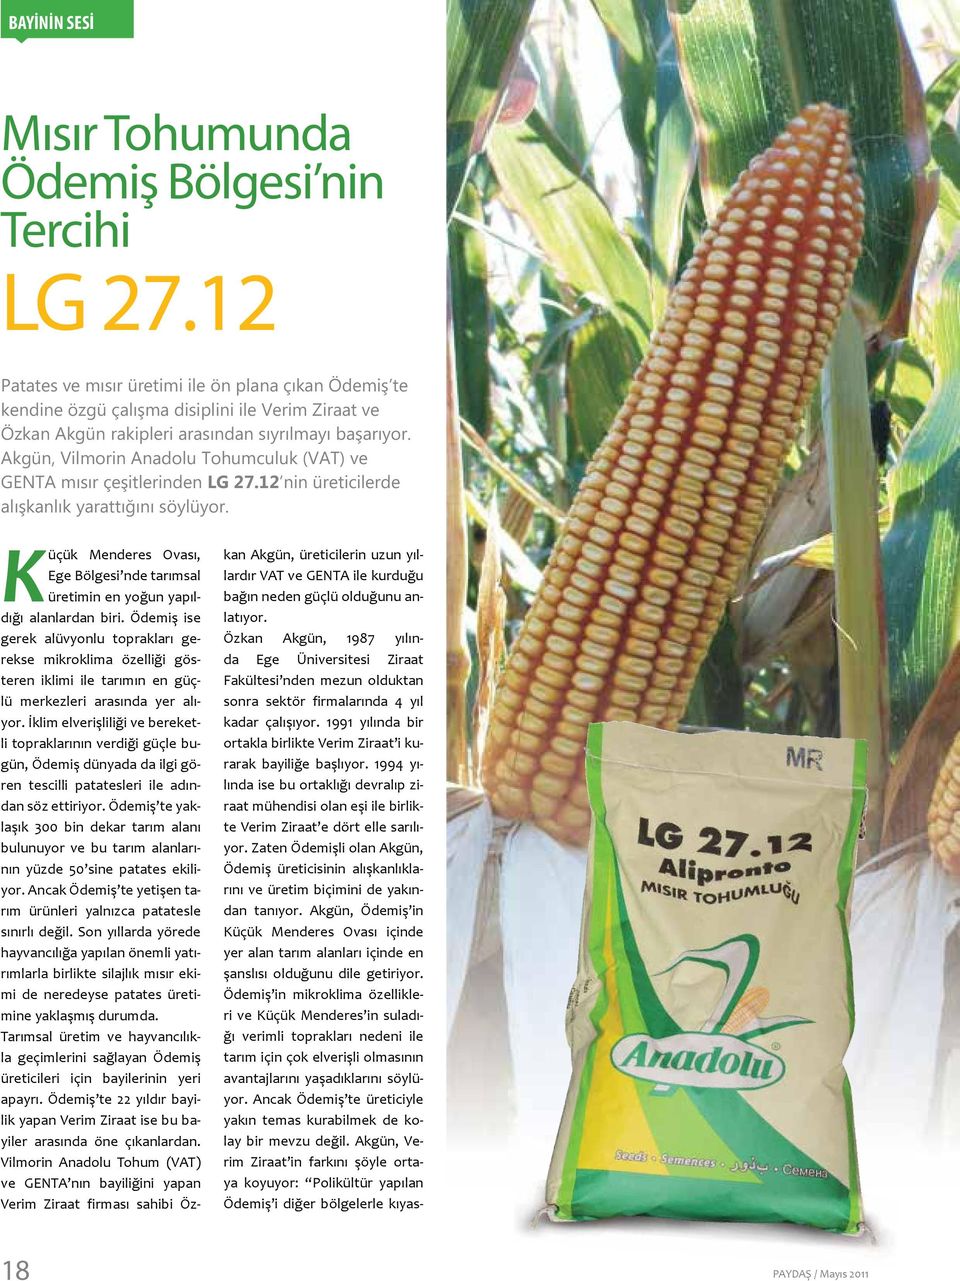 Akgün, Vilmorin Anadolu Tohumculuk (VAT) ve GENTA mısır çeşitlerinden LG 27.12 nin üreticilerde alışkanlık yarattığını söylüyor.